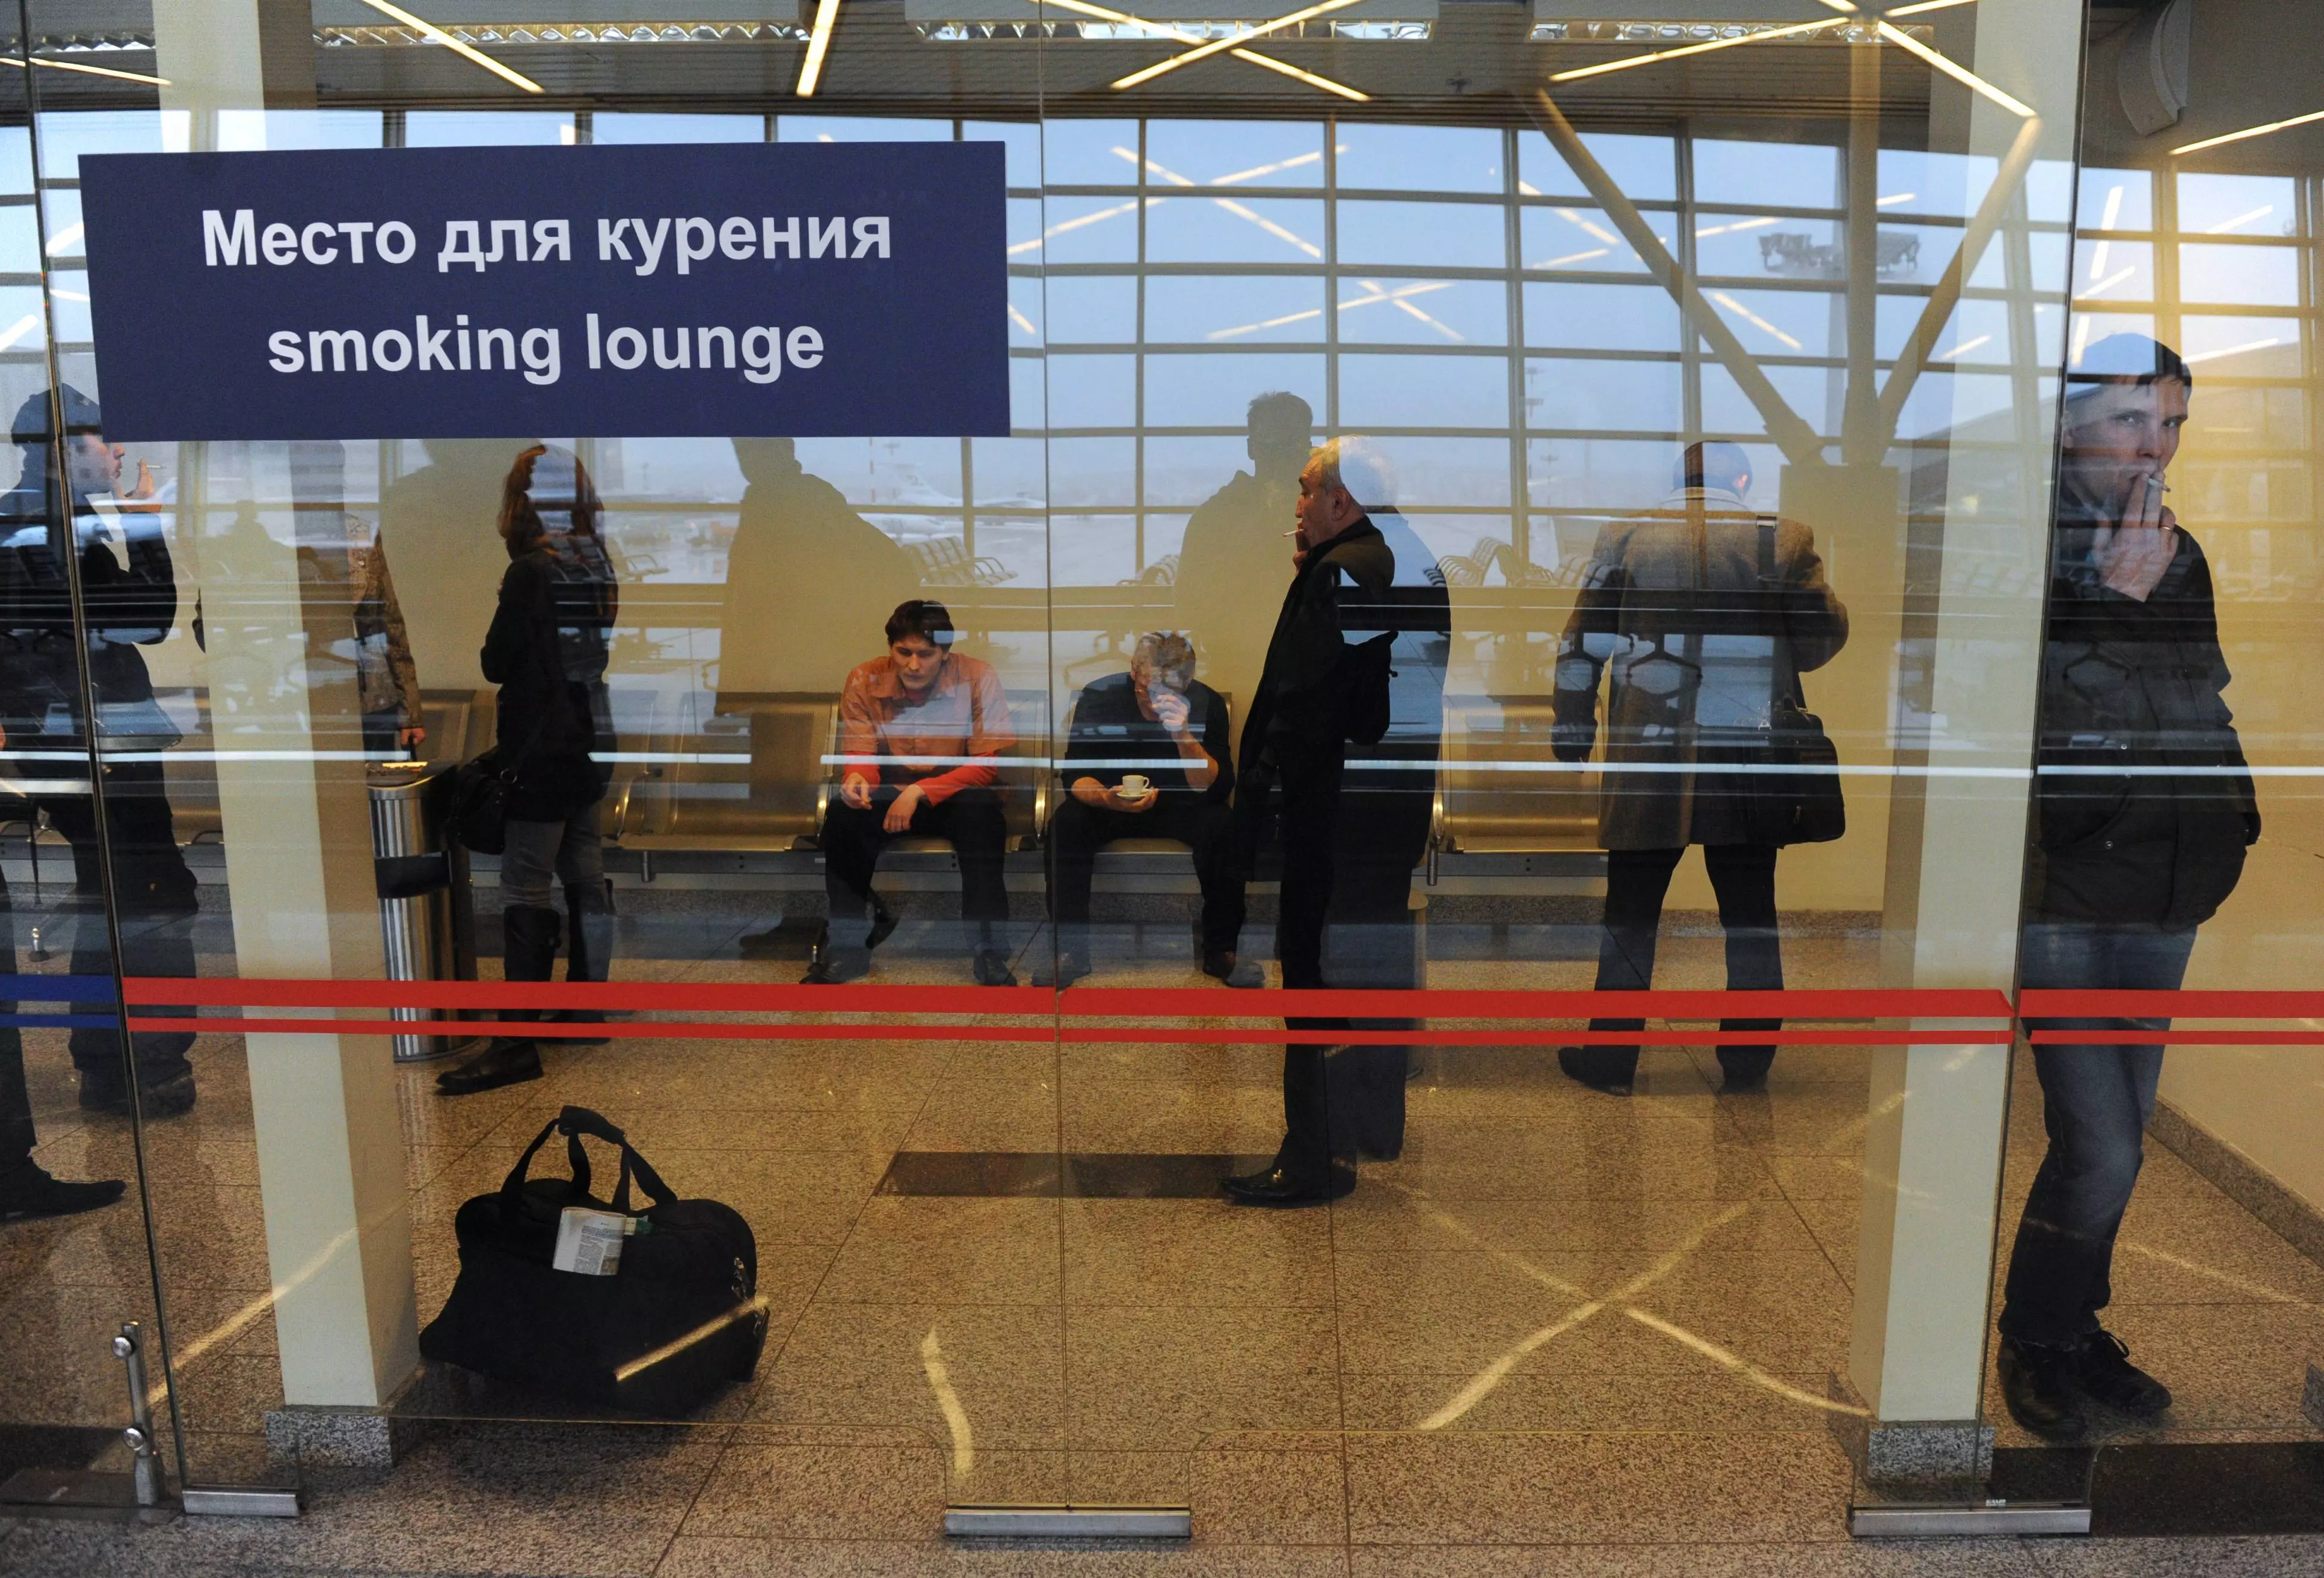 Можно ли курить электронные сигареты или айкос в самолете и аэропорту?